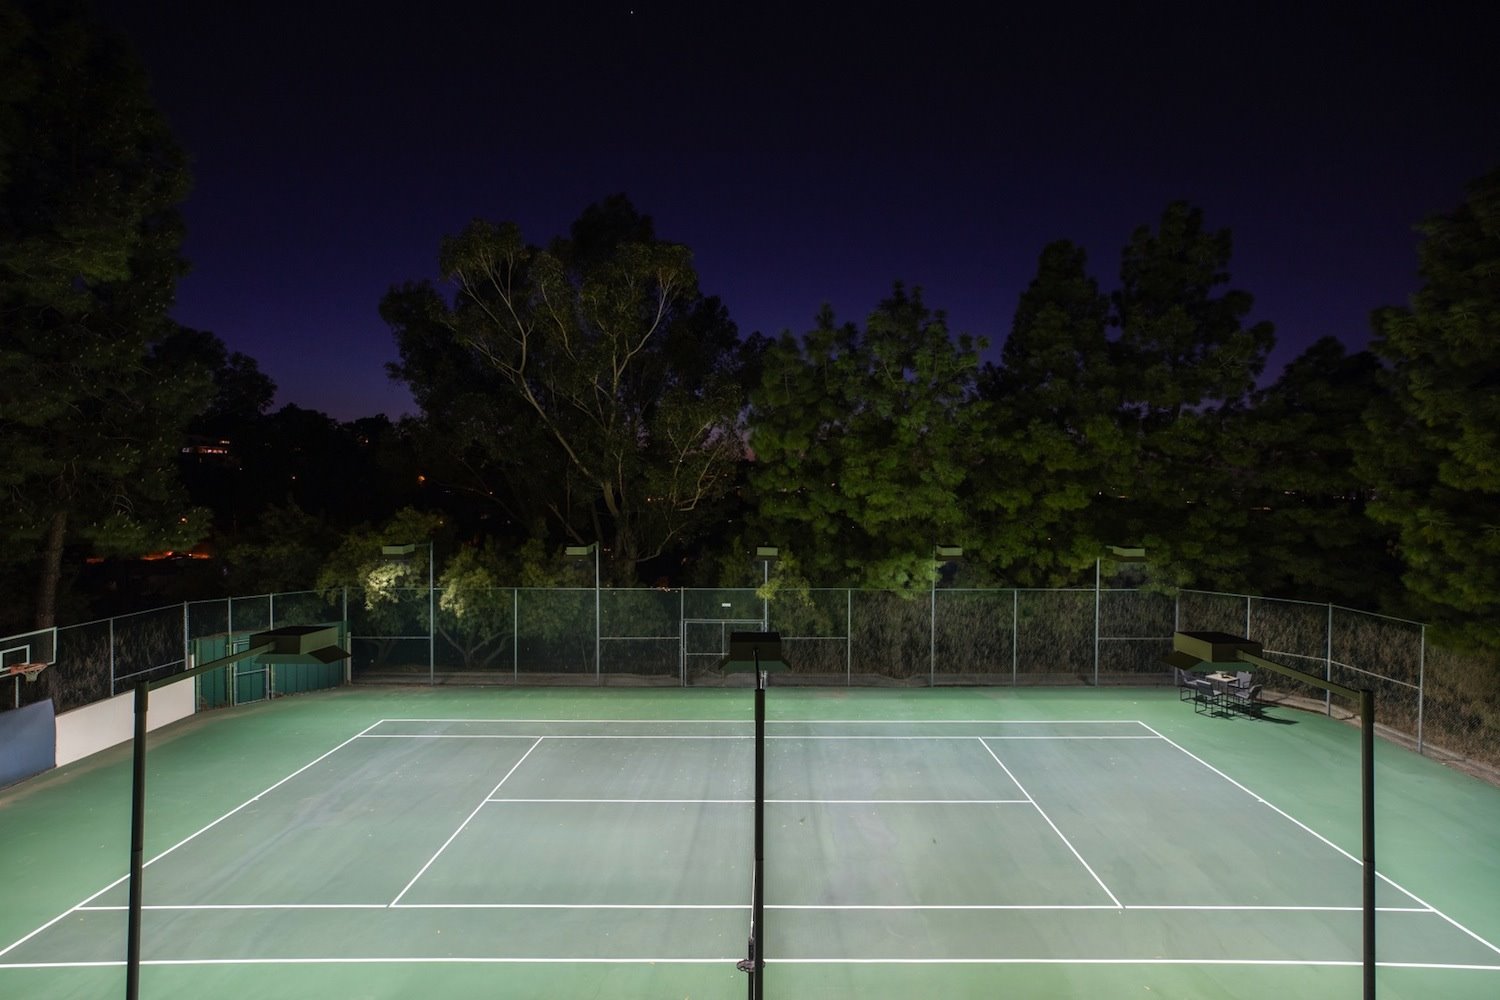 La pista de tenis cuenta con luz artificial para poder jugar partidos por la noche.